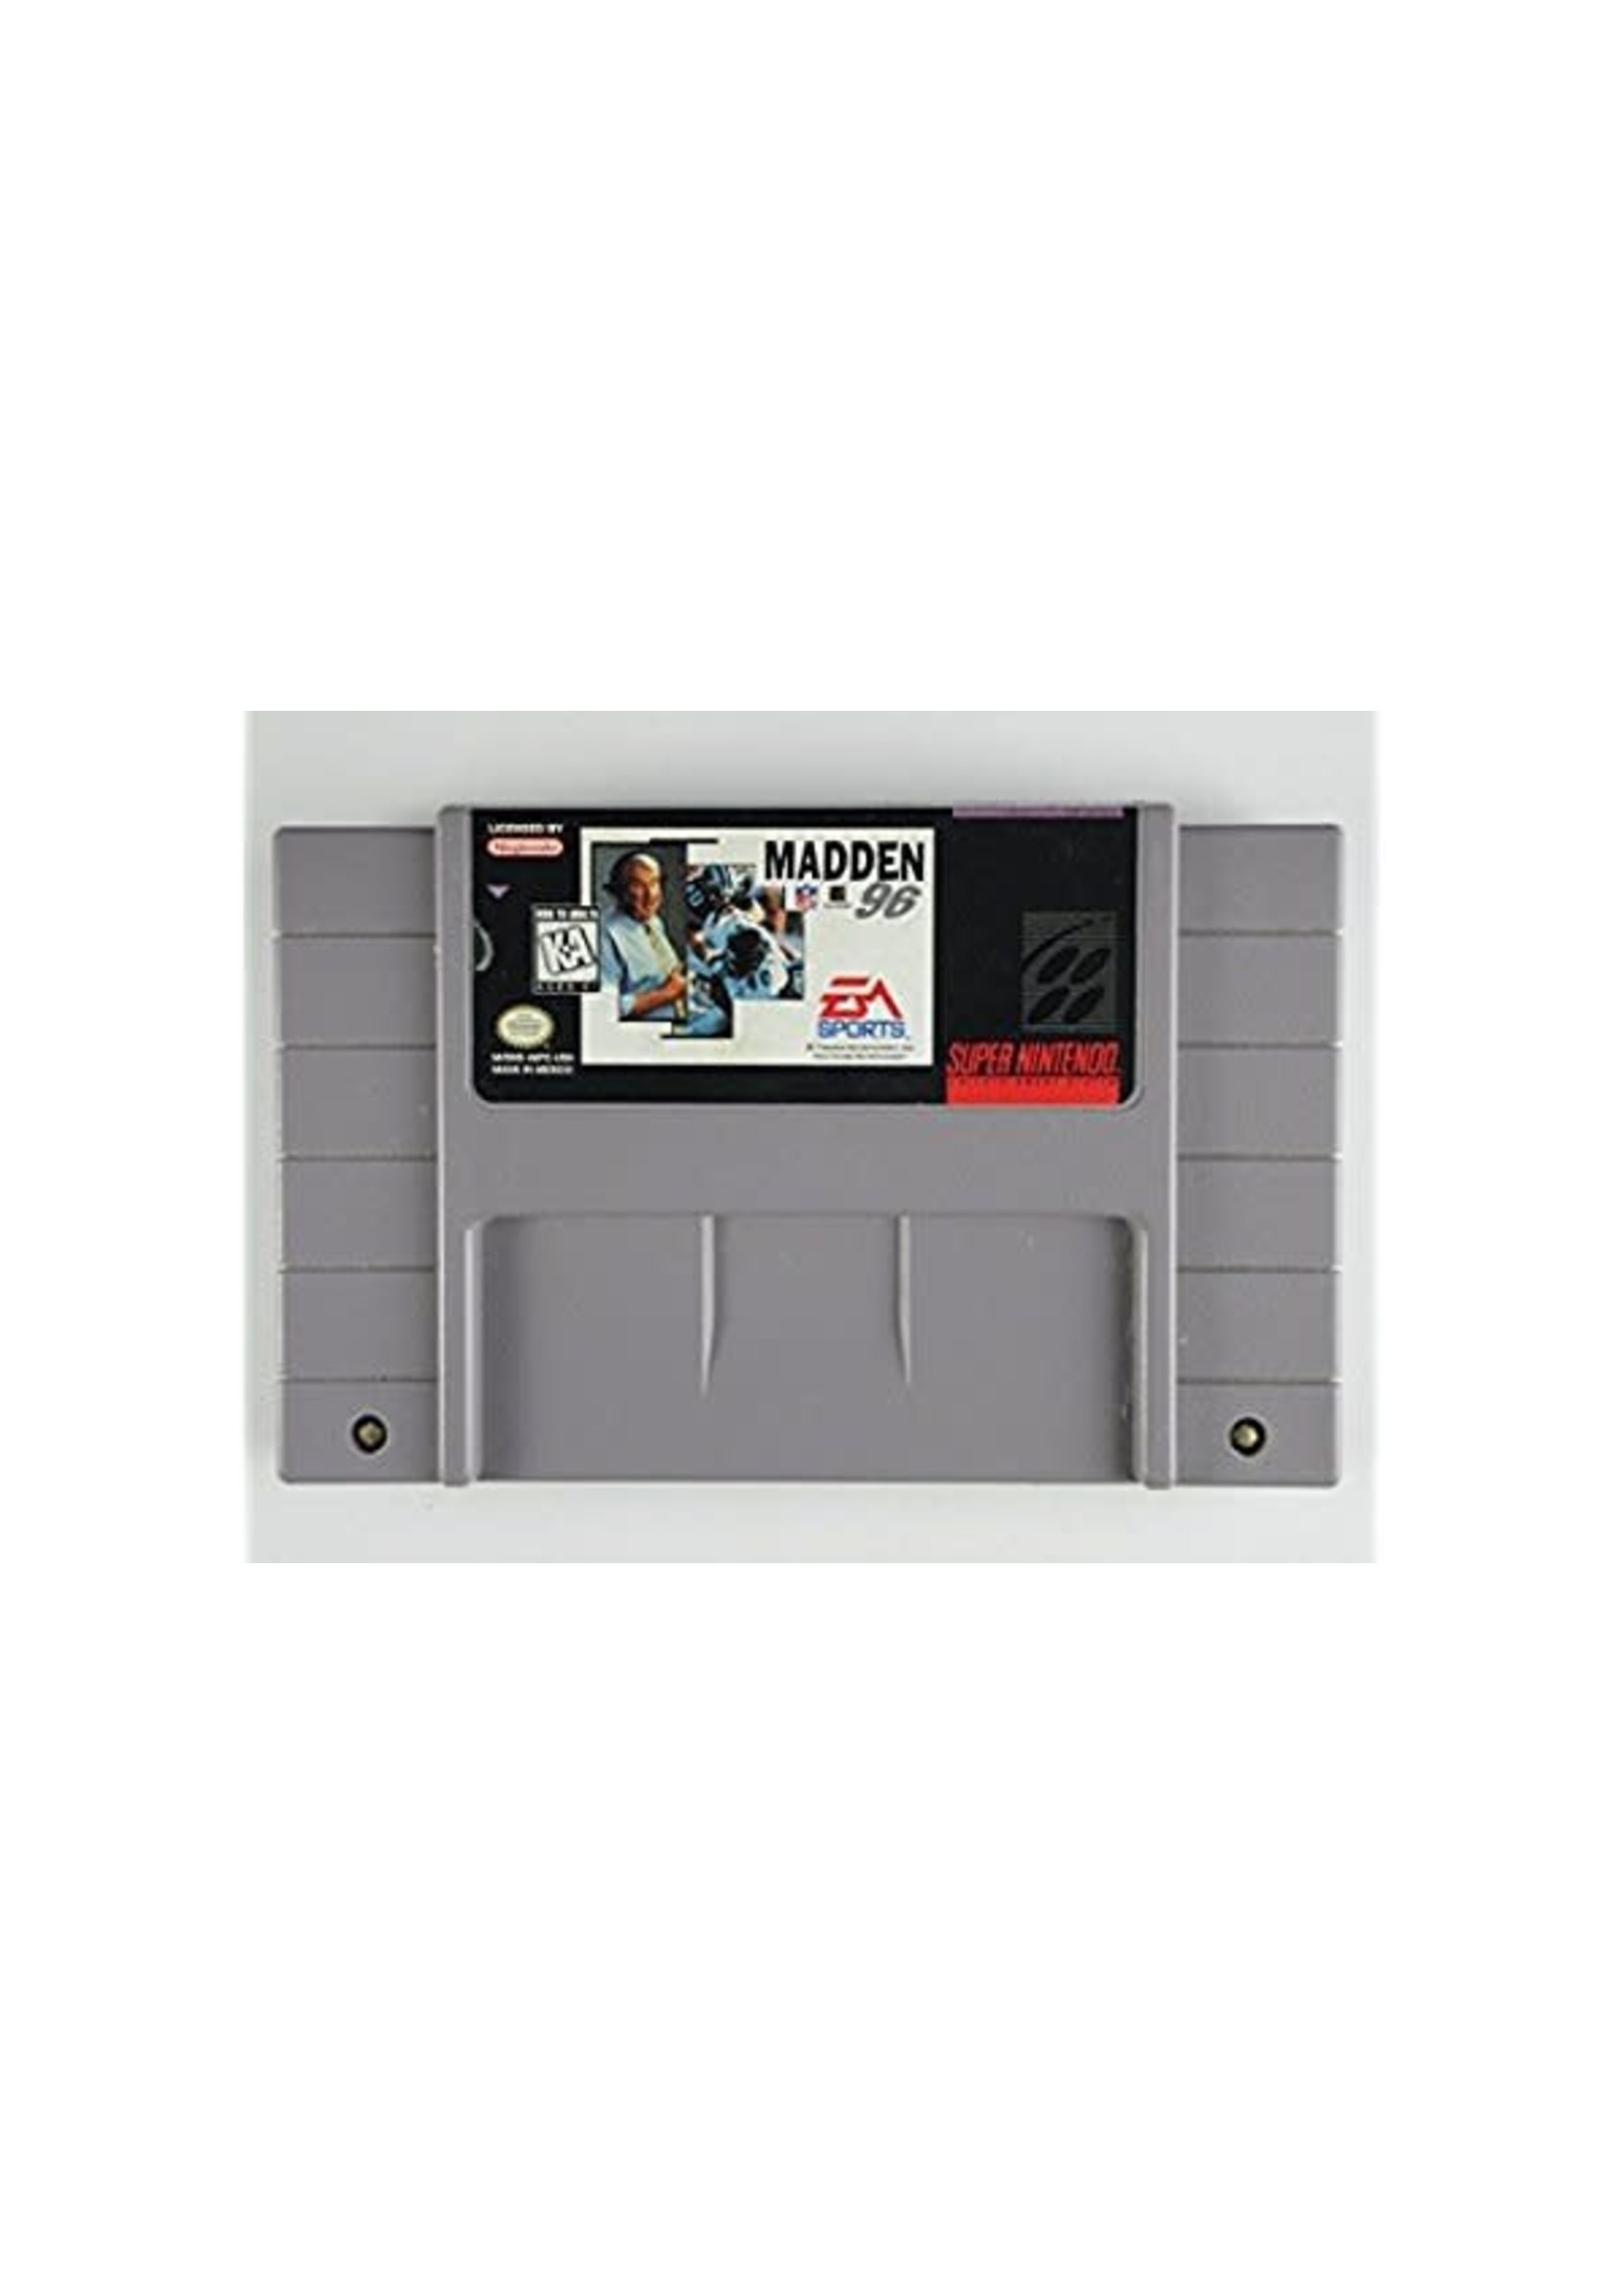 Nintendo Super Nintendo (SNES) Madden NFL '96